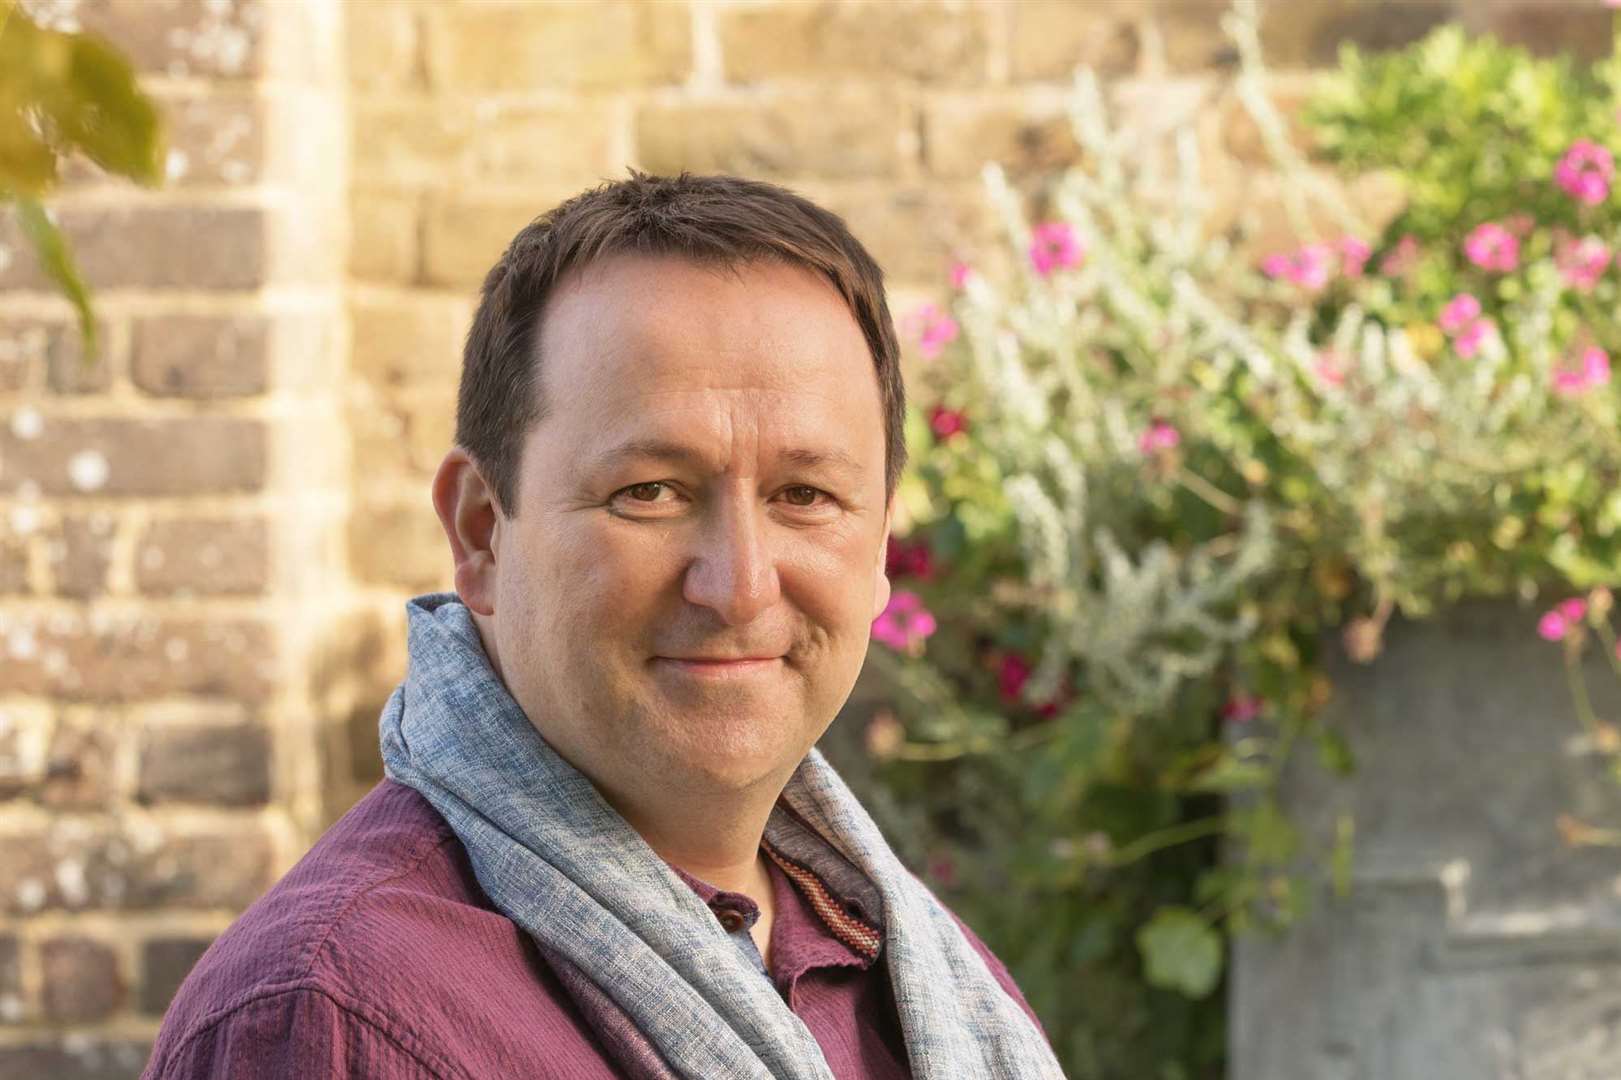 Canterbury-based gardening expert Mark Lane